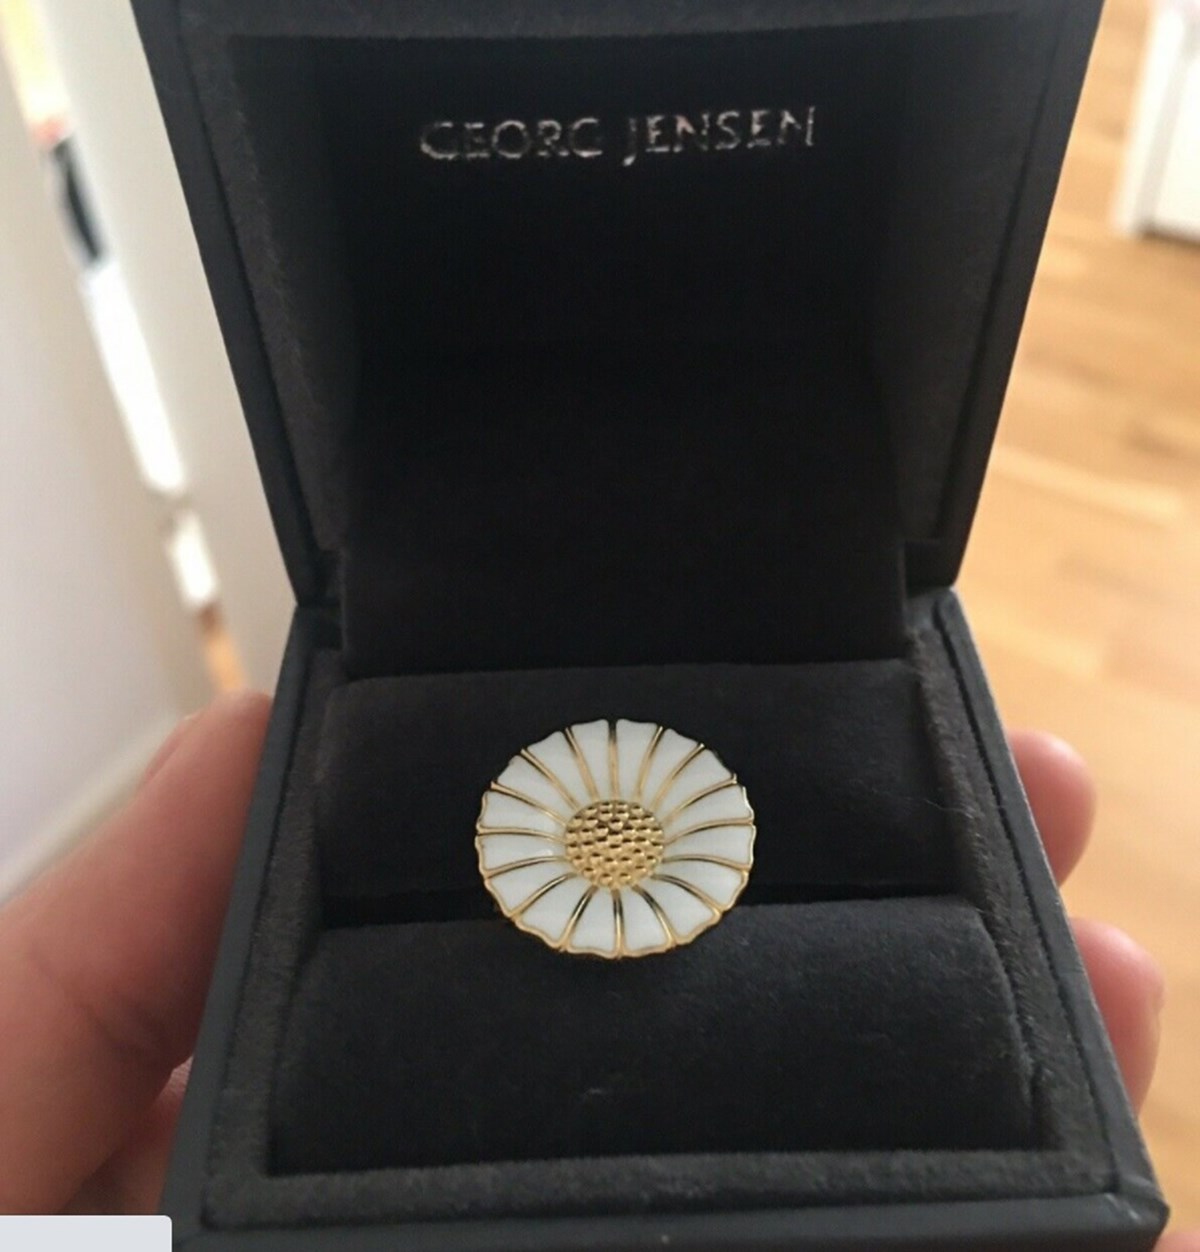 I Kastrup bor Lucy, der har denne smykkeblomst fra Georg Jensen til salg på DBA. 950 kroner håber Lucy at få for blomsterringen